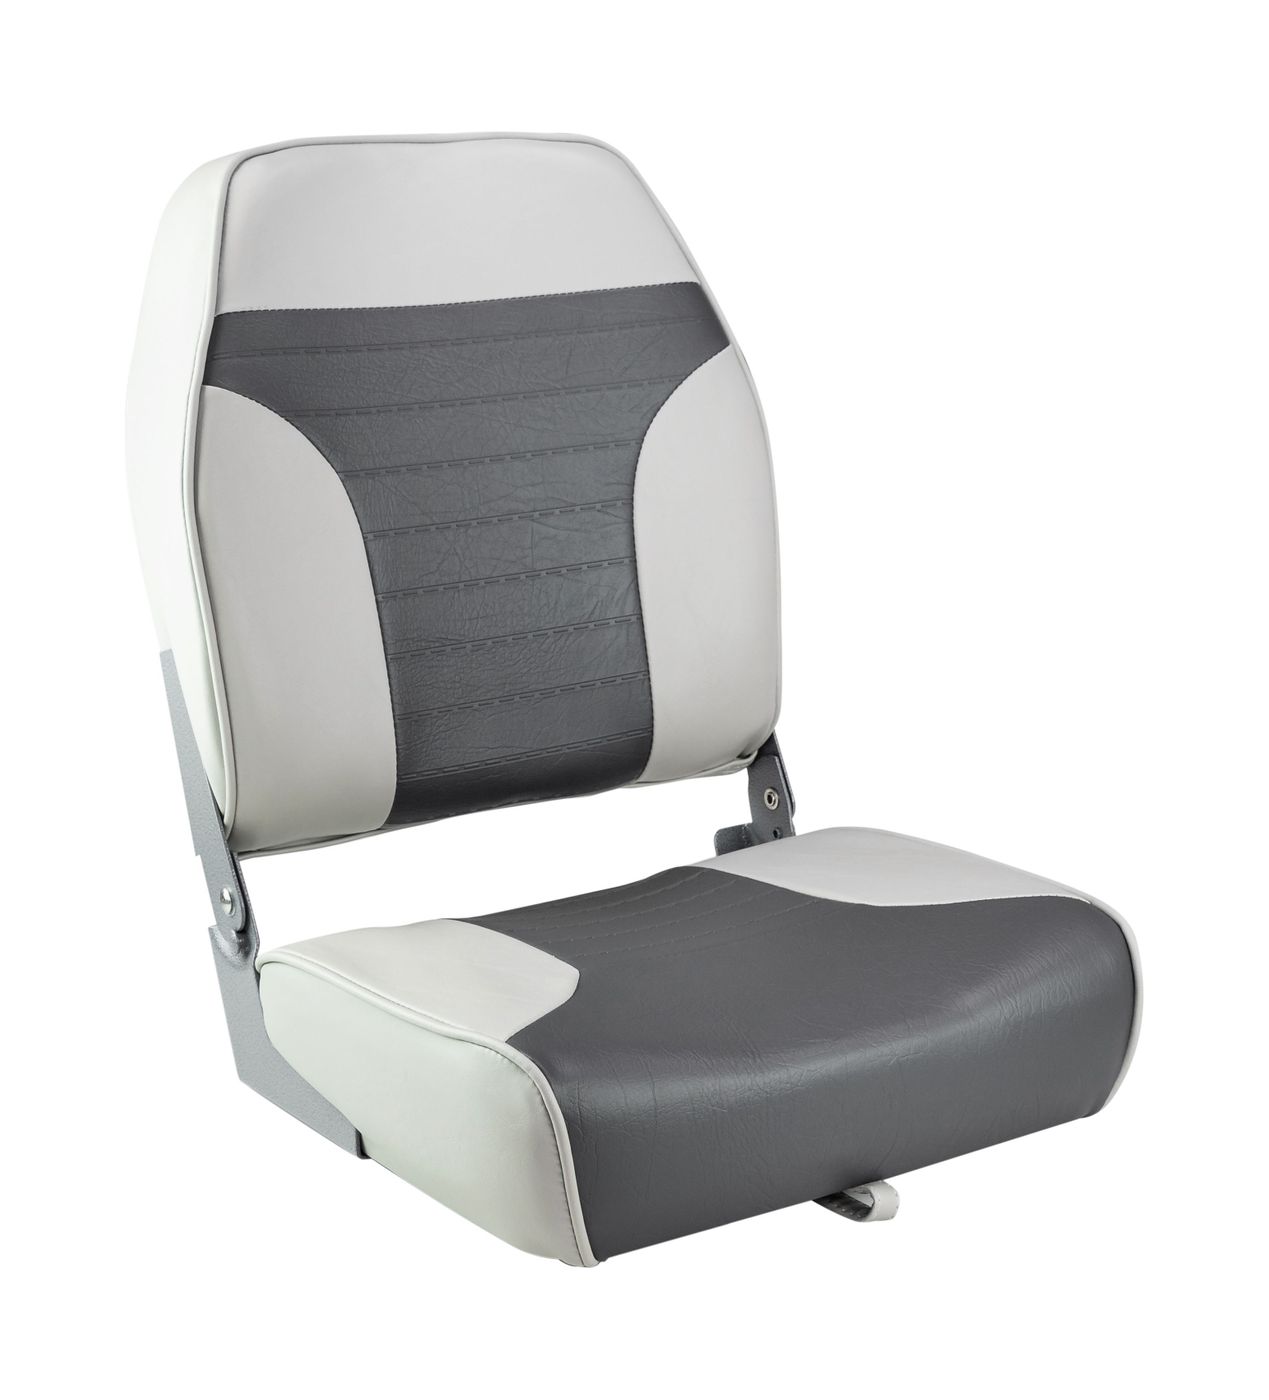 Кресло складное мягкое ECONOMY с высокой спинкой, цвет серый/темно-серый 1040663 кресло skipper premium с высокой спинкой серый темно серый 1061067